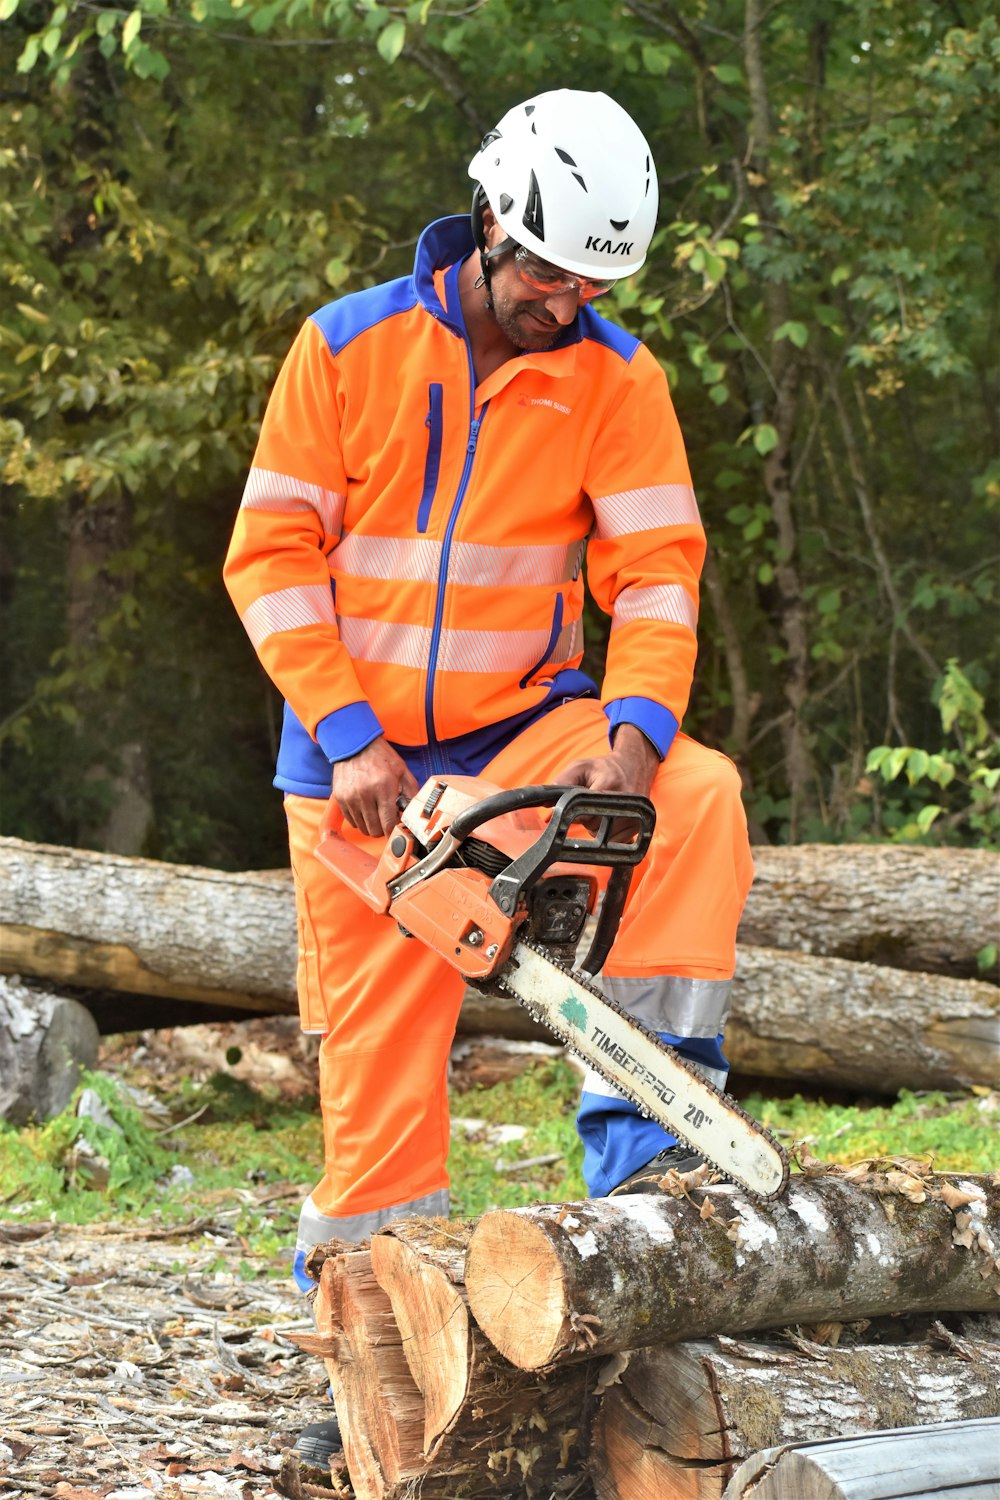 Un hombre con una chaqueta naranja y azul está cortando un tronco